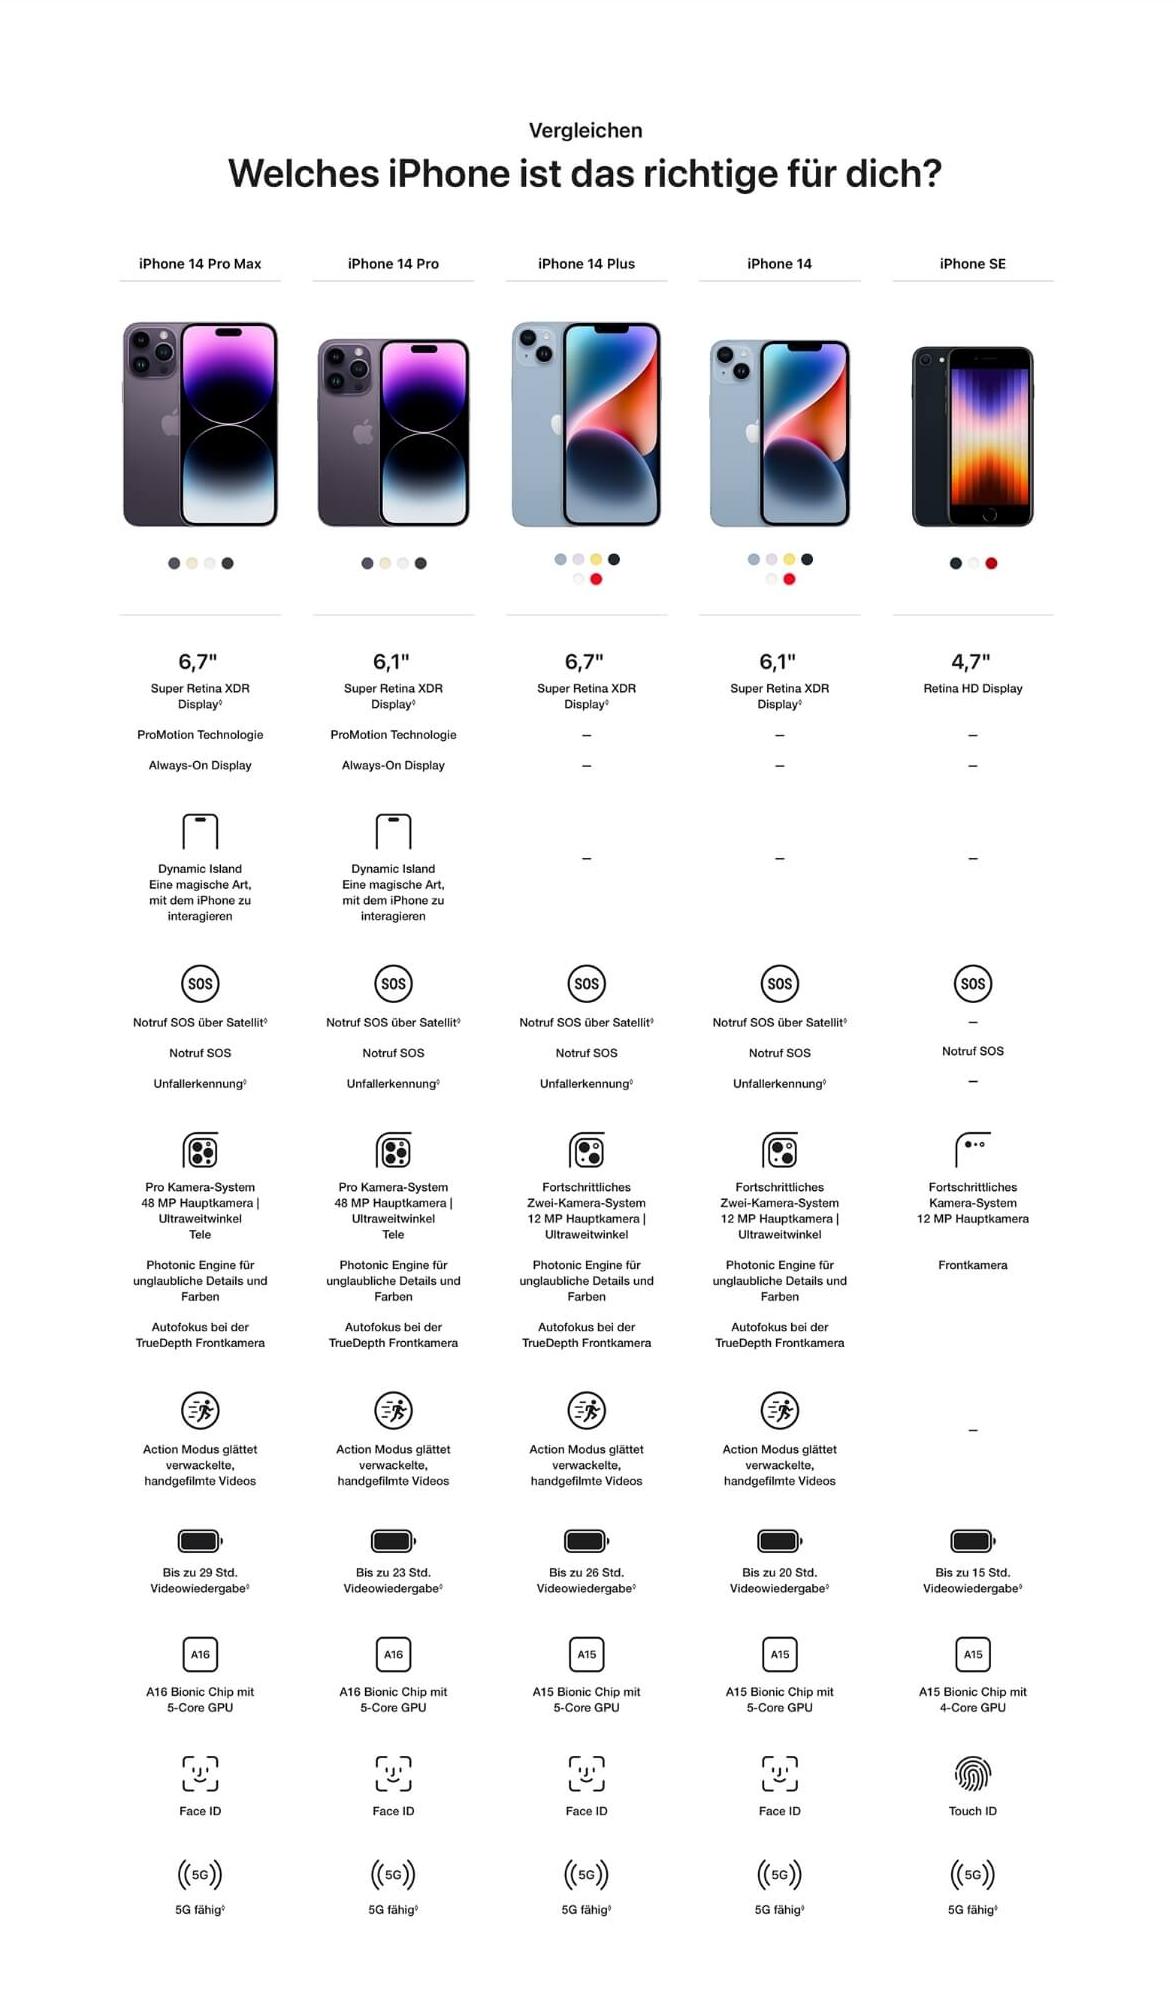 iPhone 14 Pro Max mit Vertrag Zum Angebot 1&1 | > bestellen